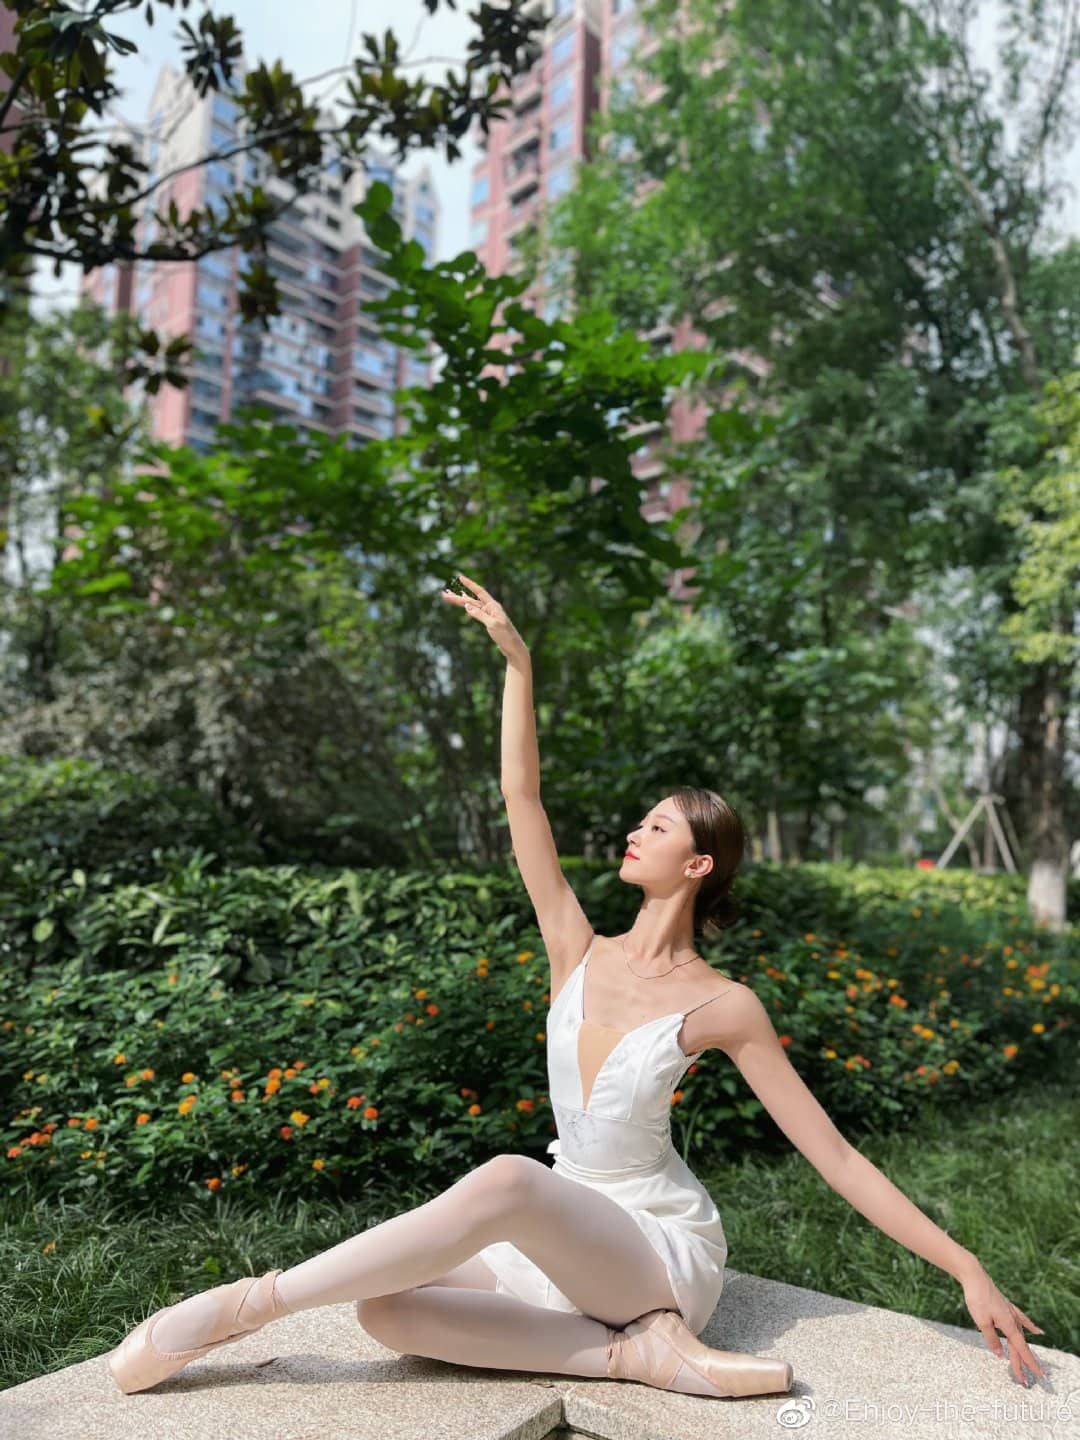 Mỹ nữ ballet Tứ Xuyên đẹp chuẩn &#34;mình hạc xương mai&#34; làm gì cũng thanh thoát - 1